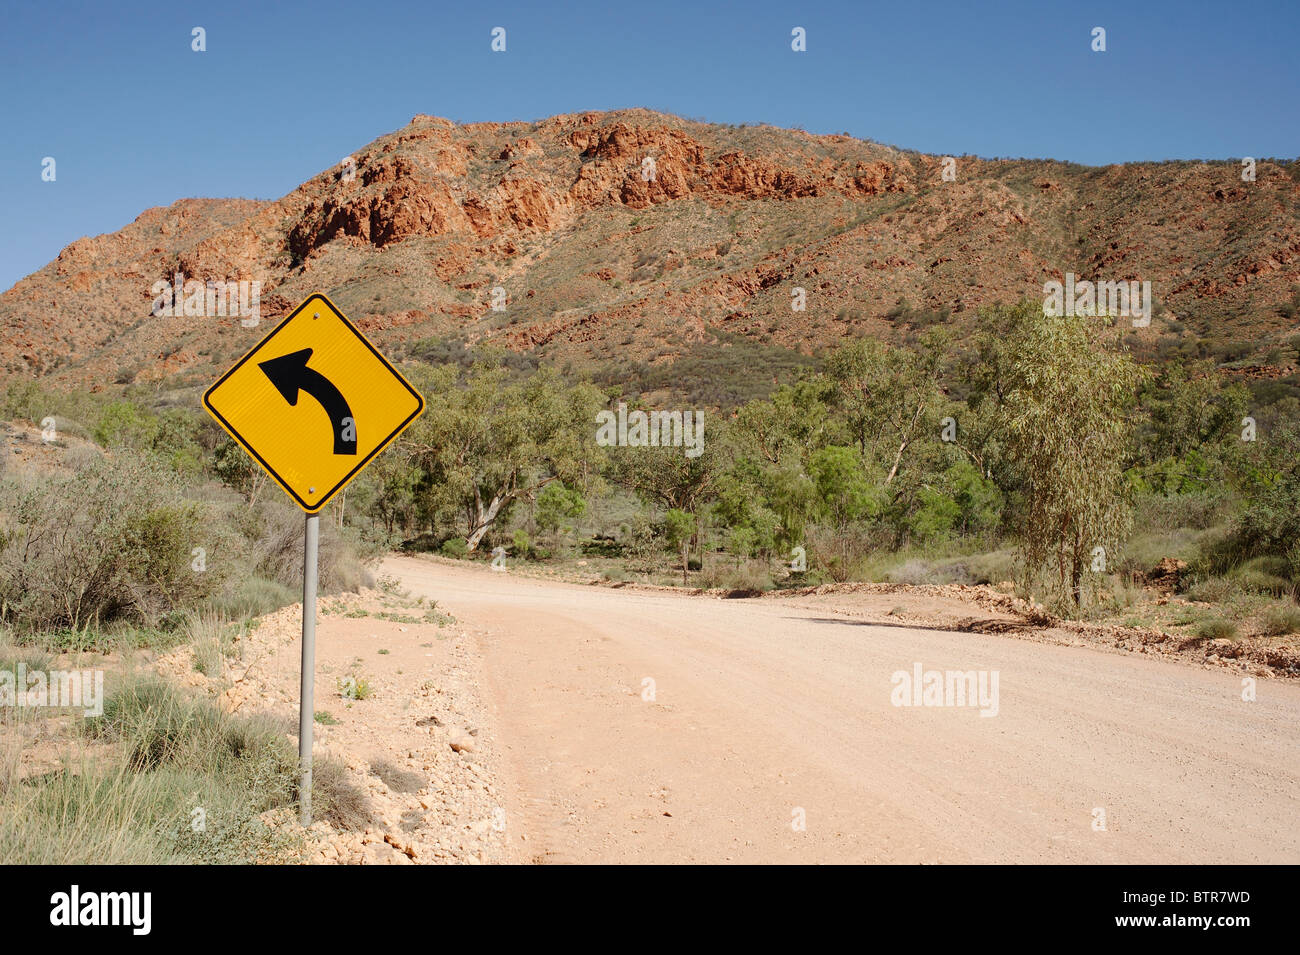 L'Australie, N'Dhala Gorge, signe de la courbe avec la route Banque D'Images